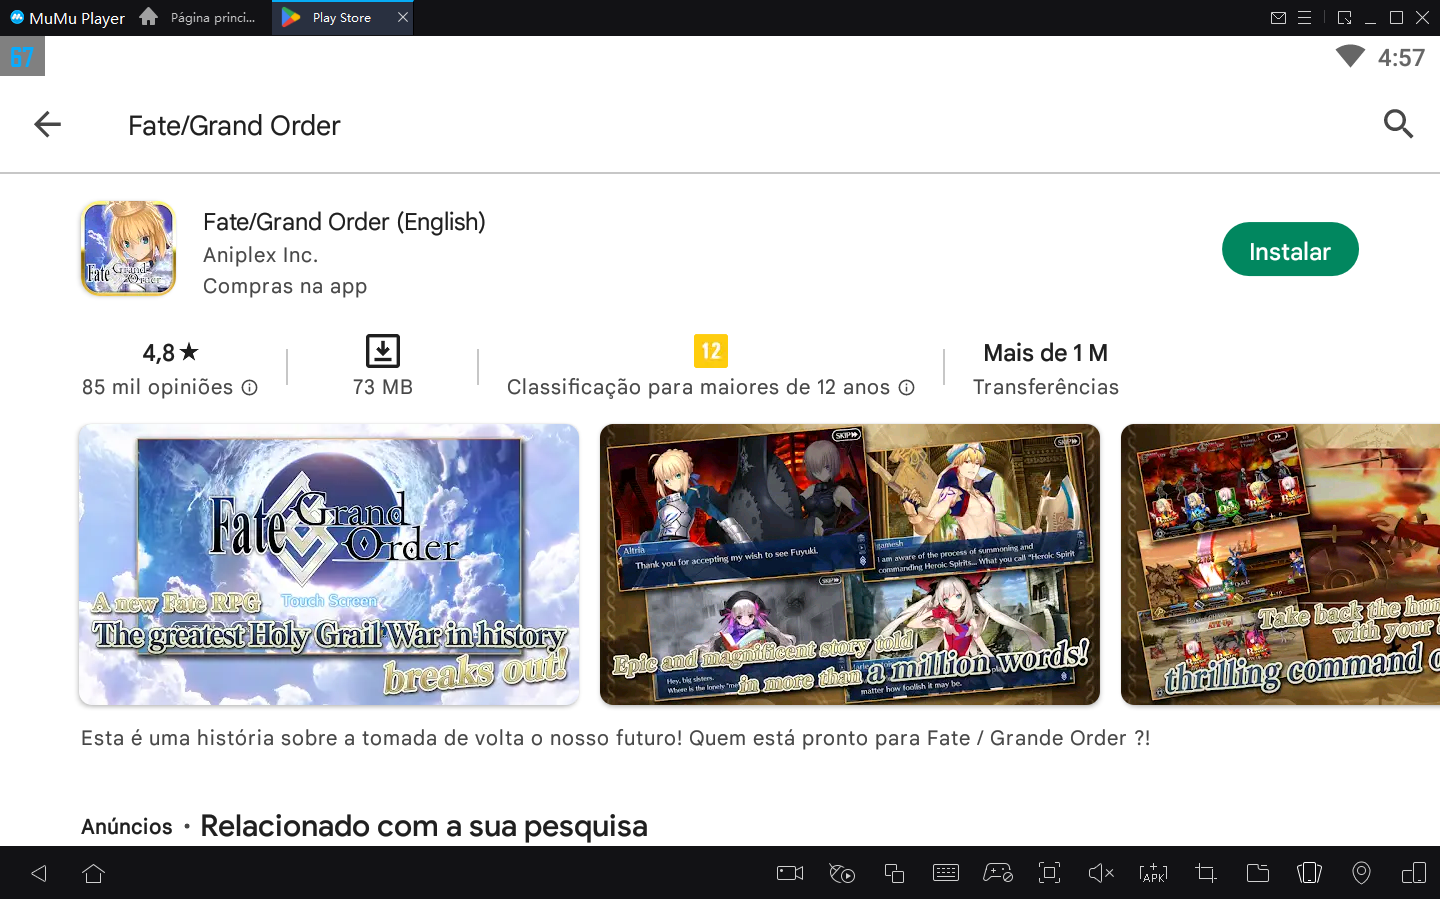 Fate/Grand Order está sendo lançado no Reino Unido e em outros países da Europa e América Latina